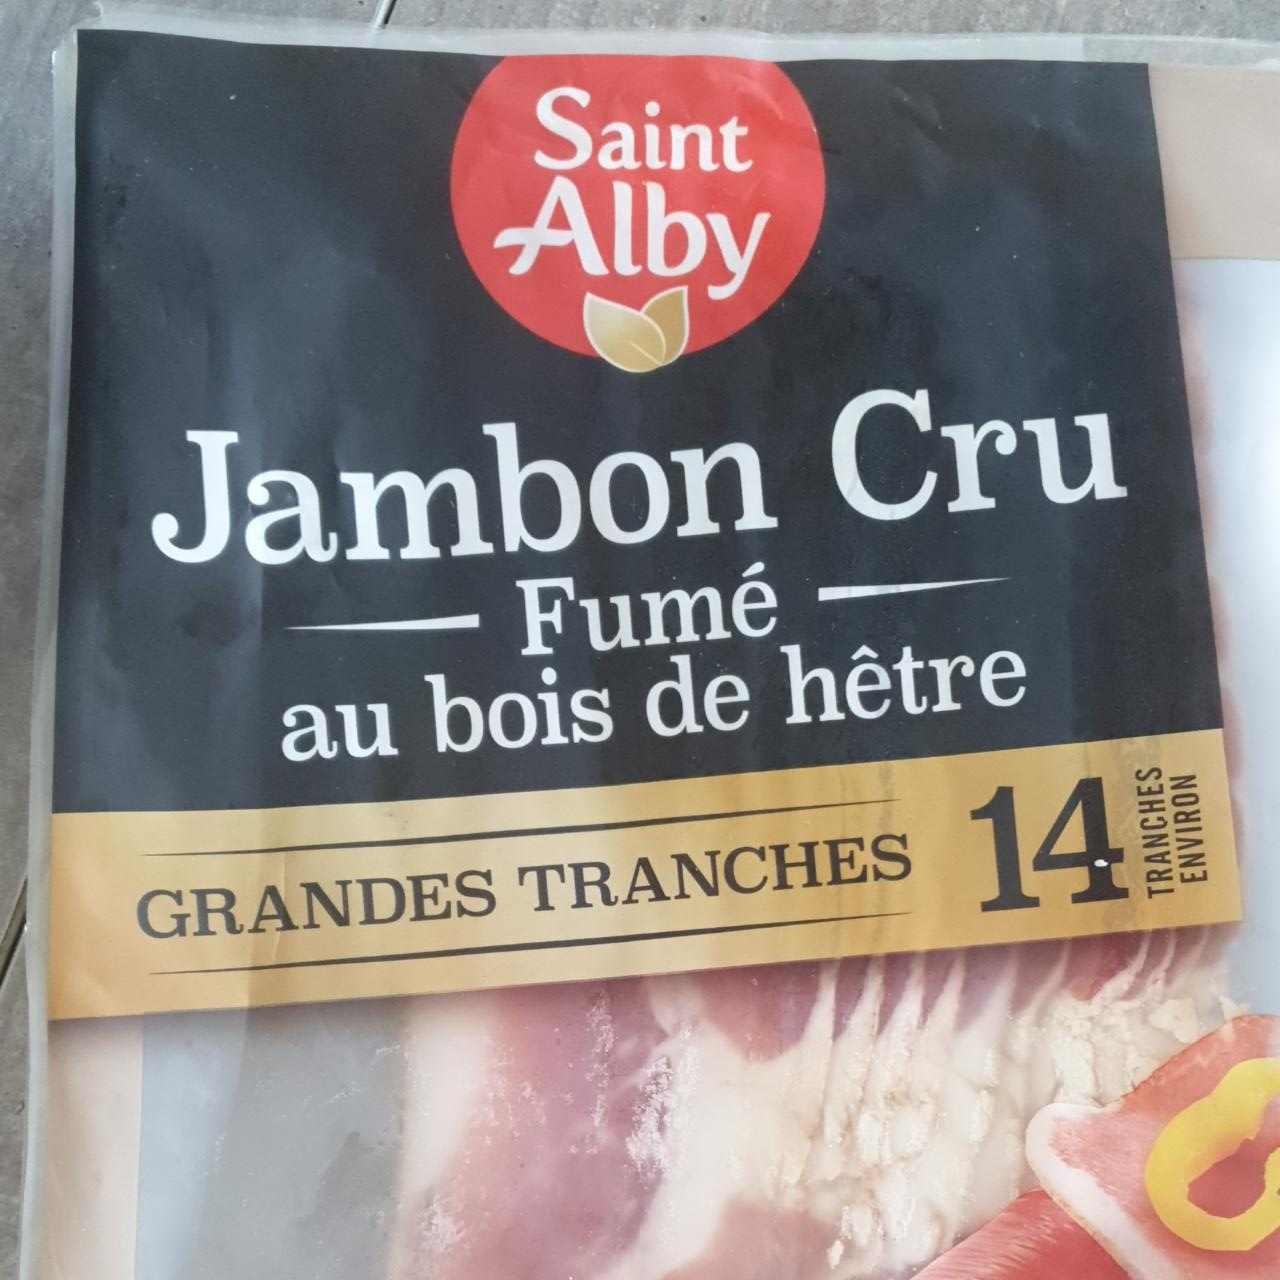 Fotografie - Jambon cru fumé au bois de hetre Saint Alby